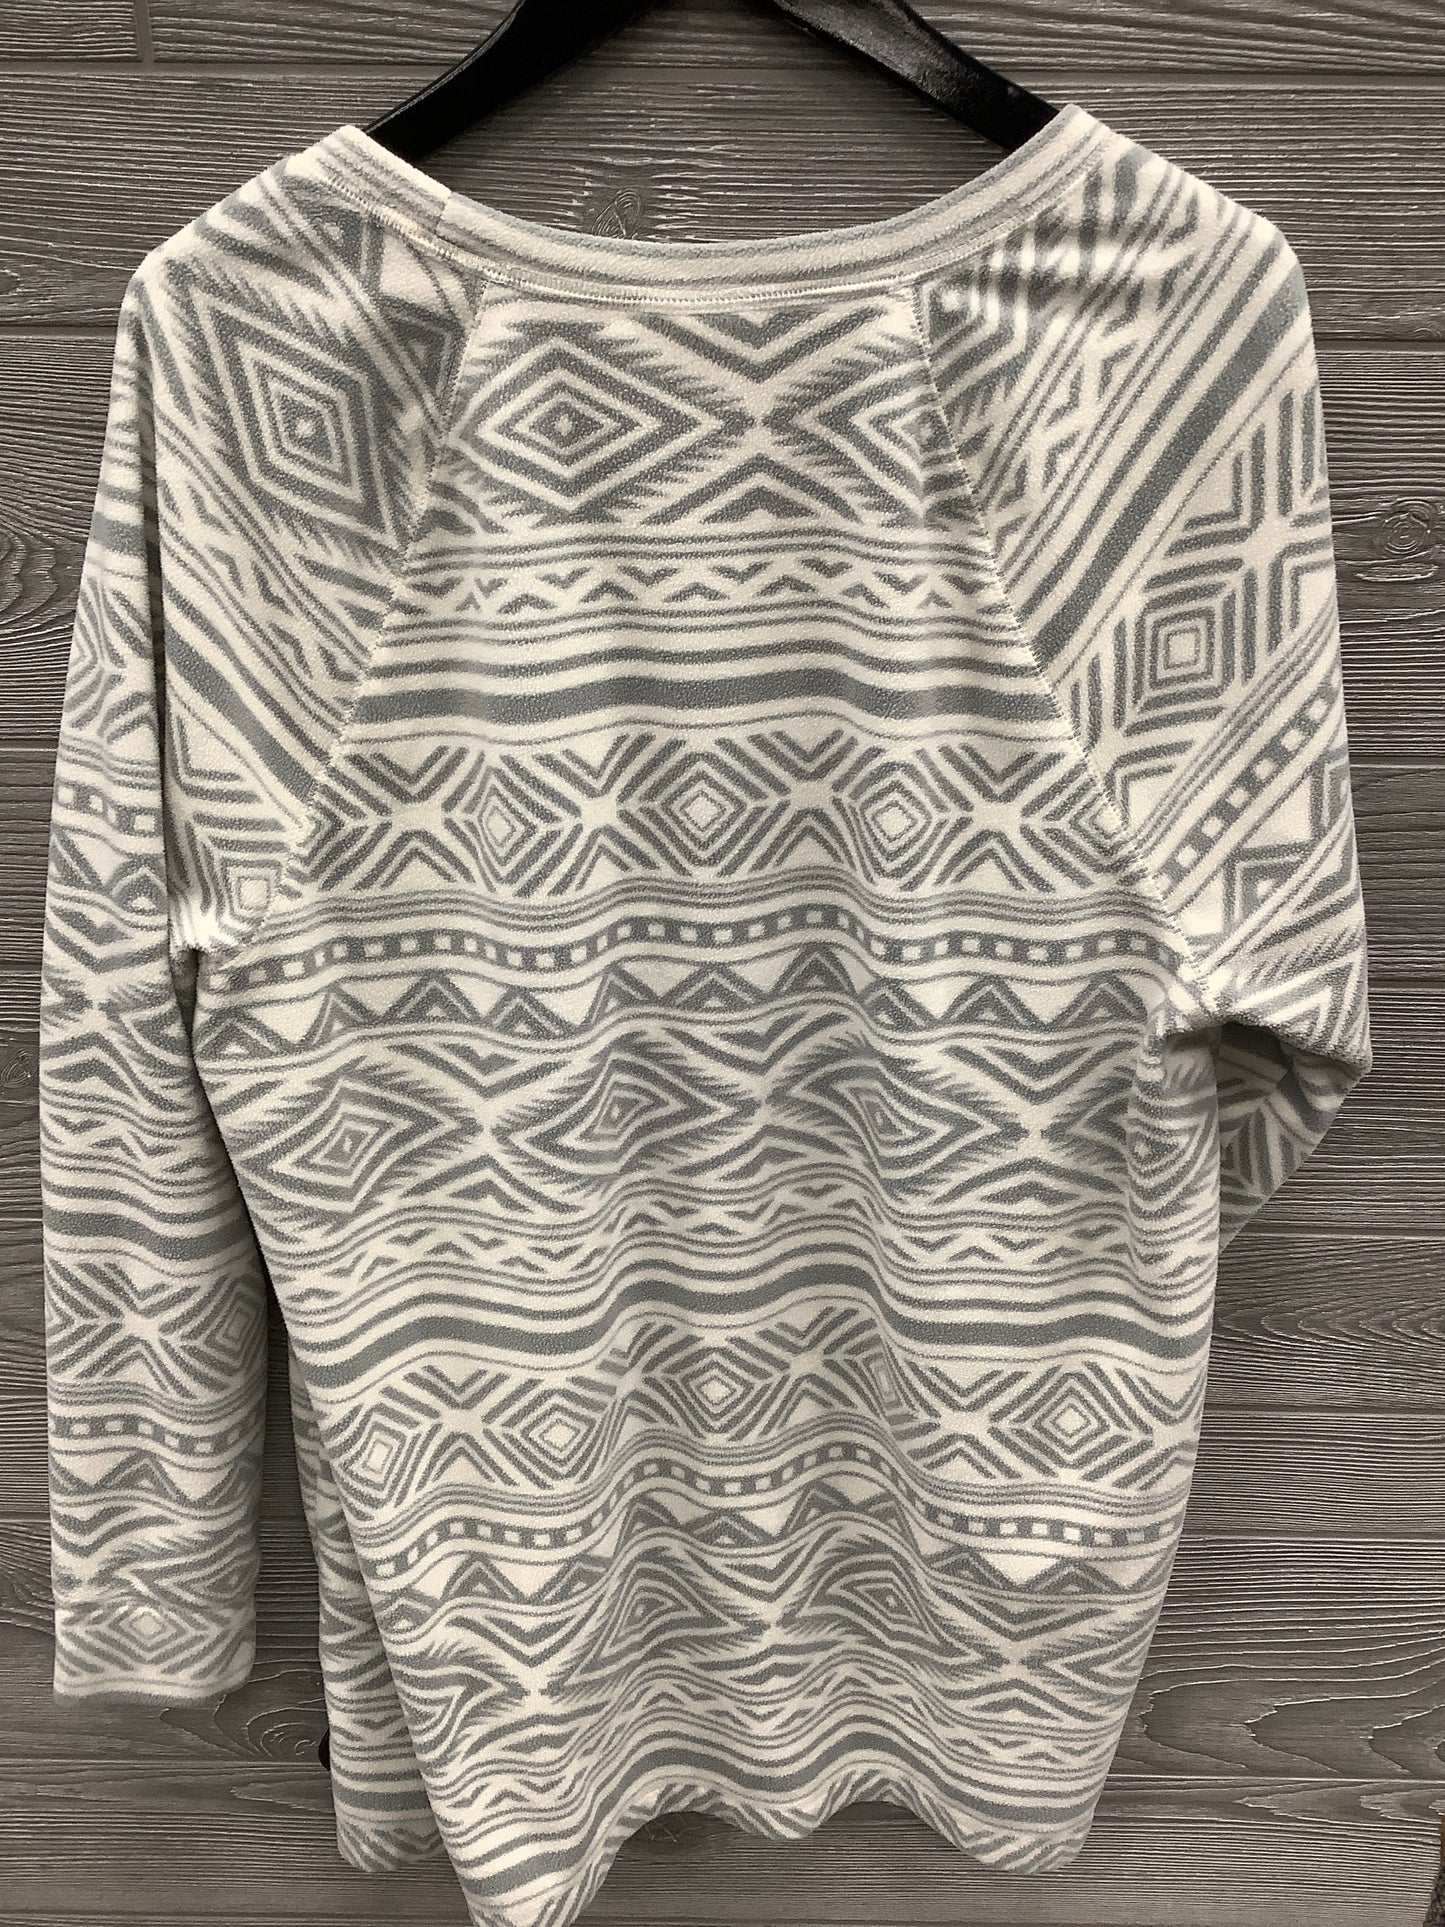 Top Long Sleeve Fleece Pullover By Danskin Now  Size: 2x